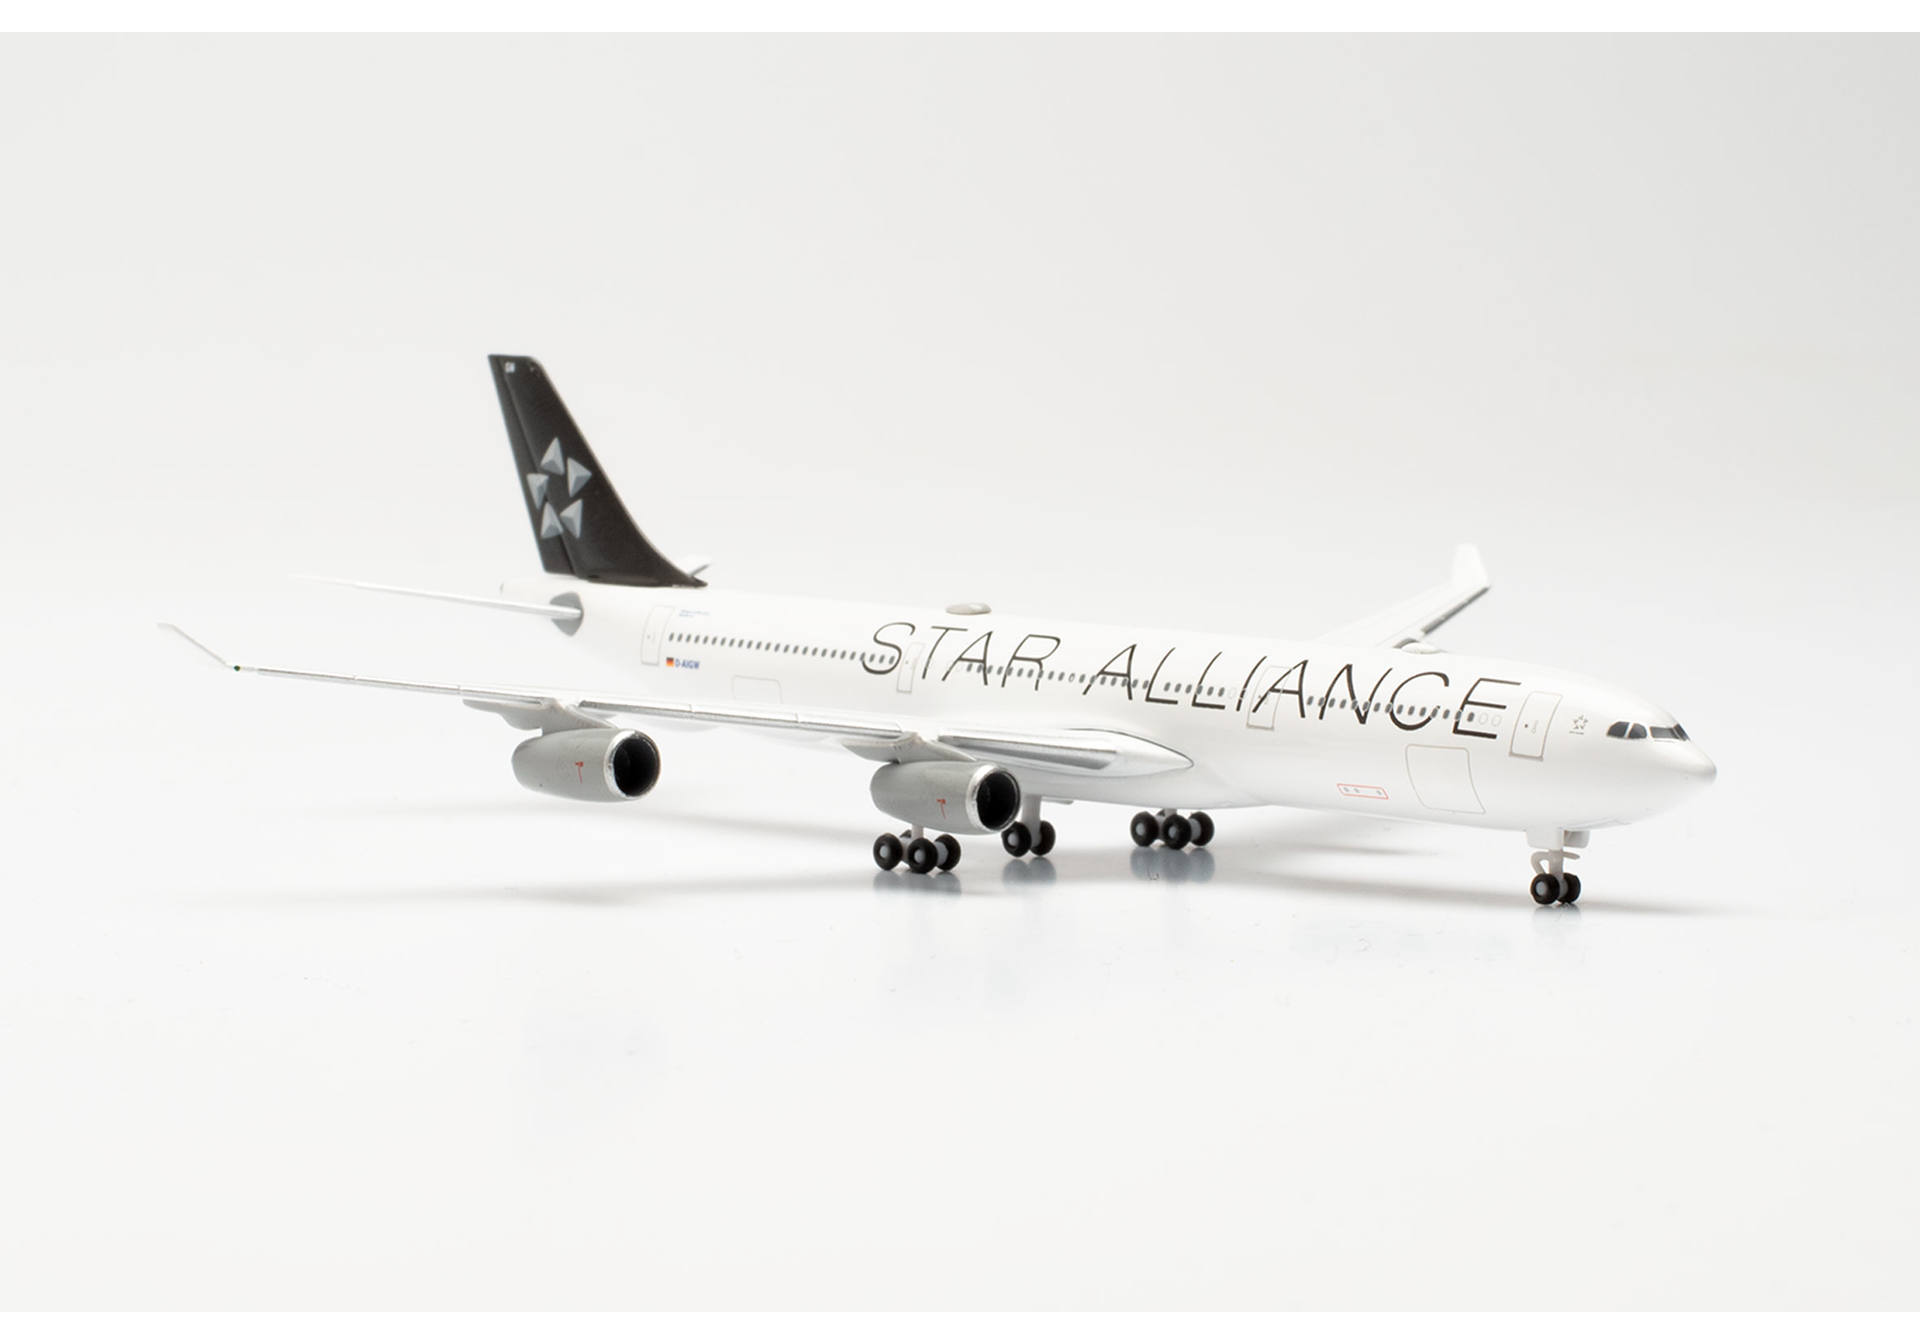 Lufthansa Airbus A340-300 "Star Alliance" - D-AIGW "Gladbeck"